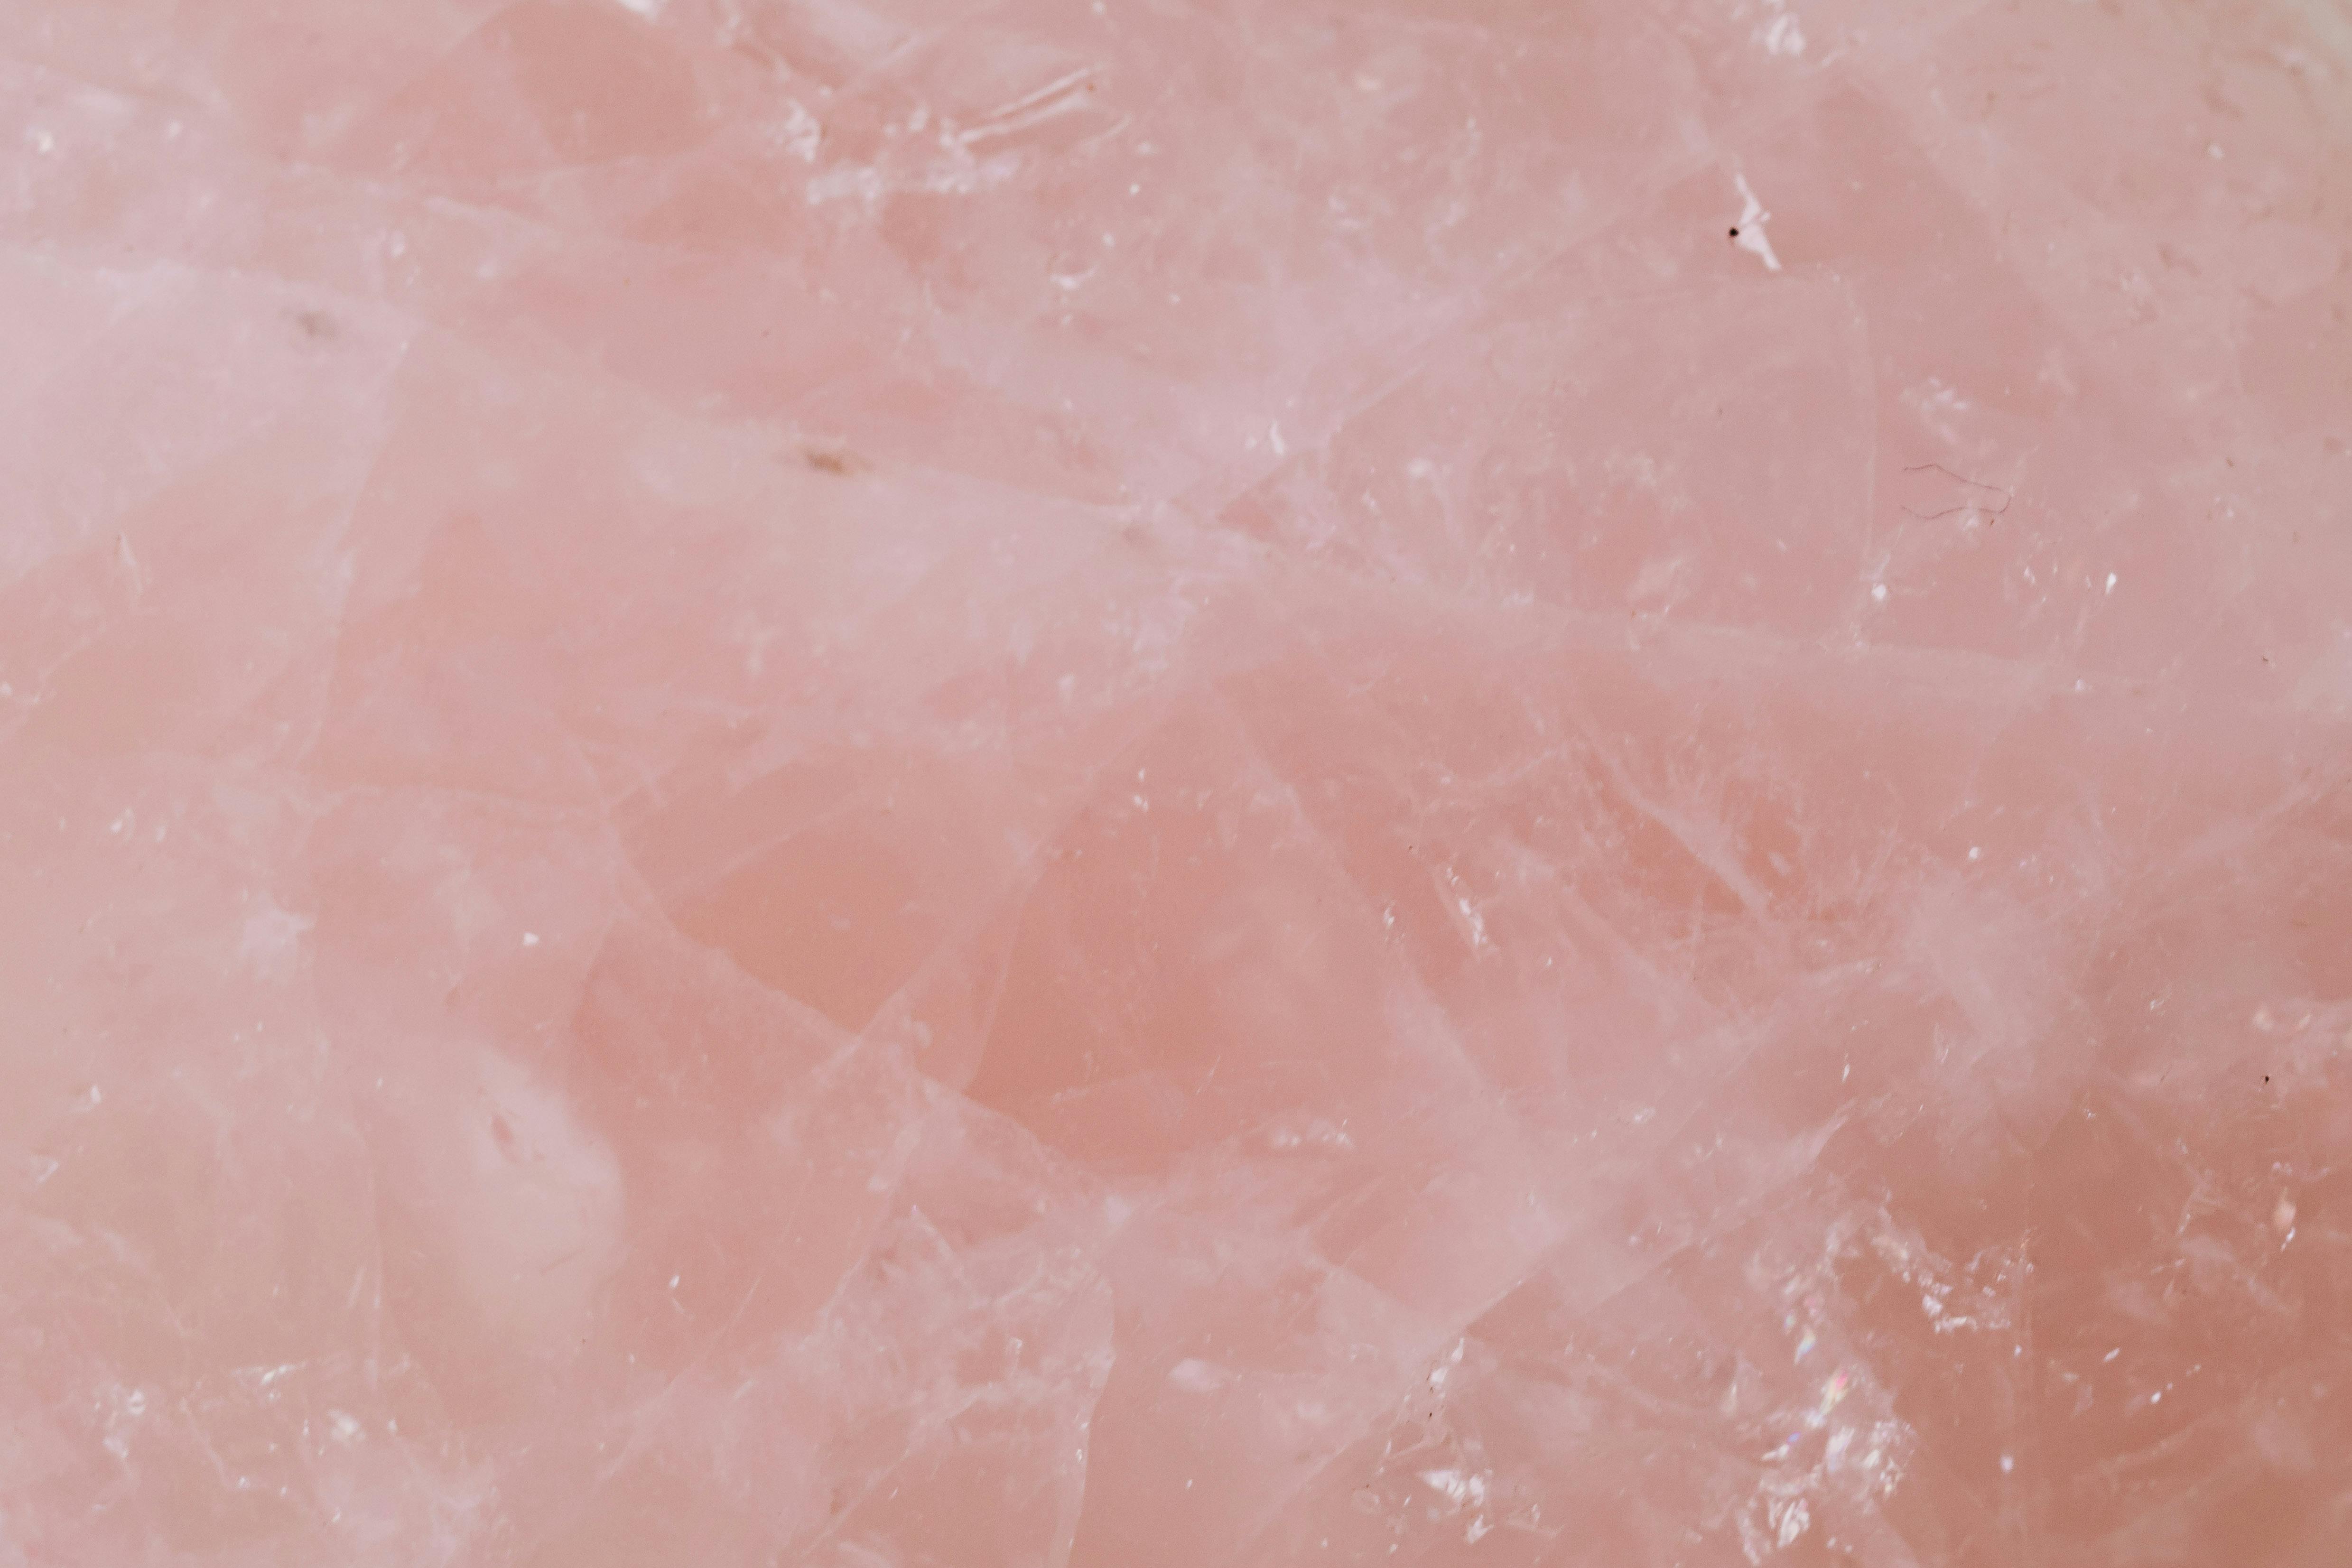 rose quartz.